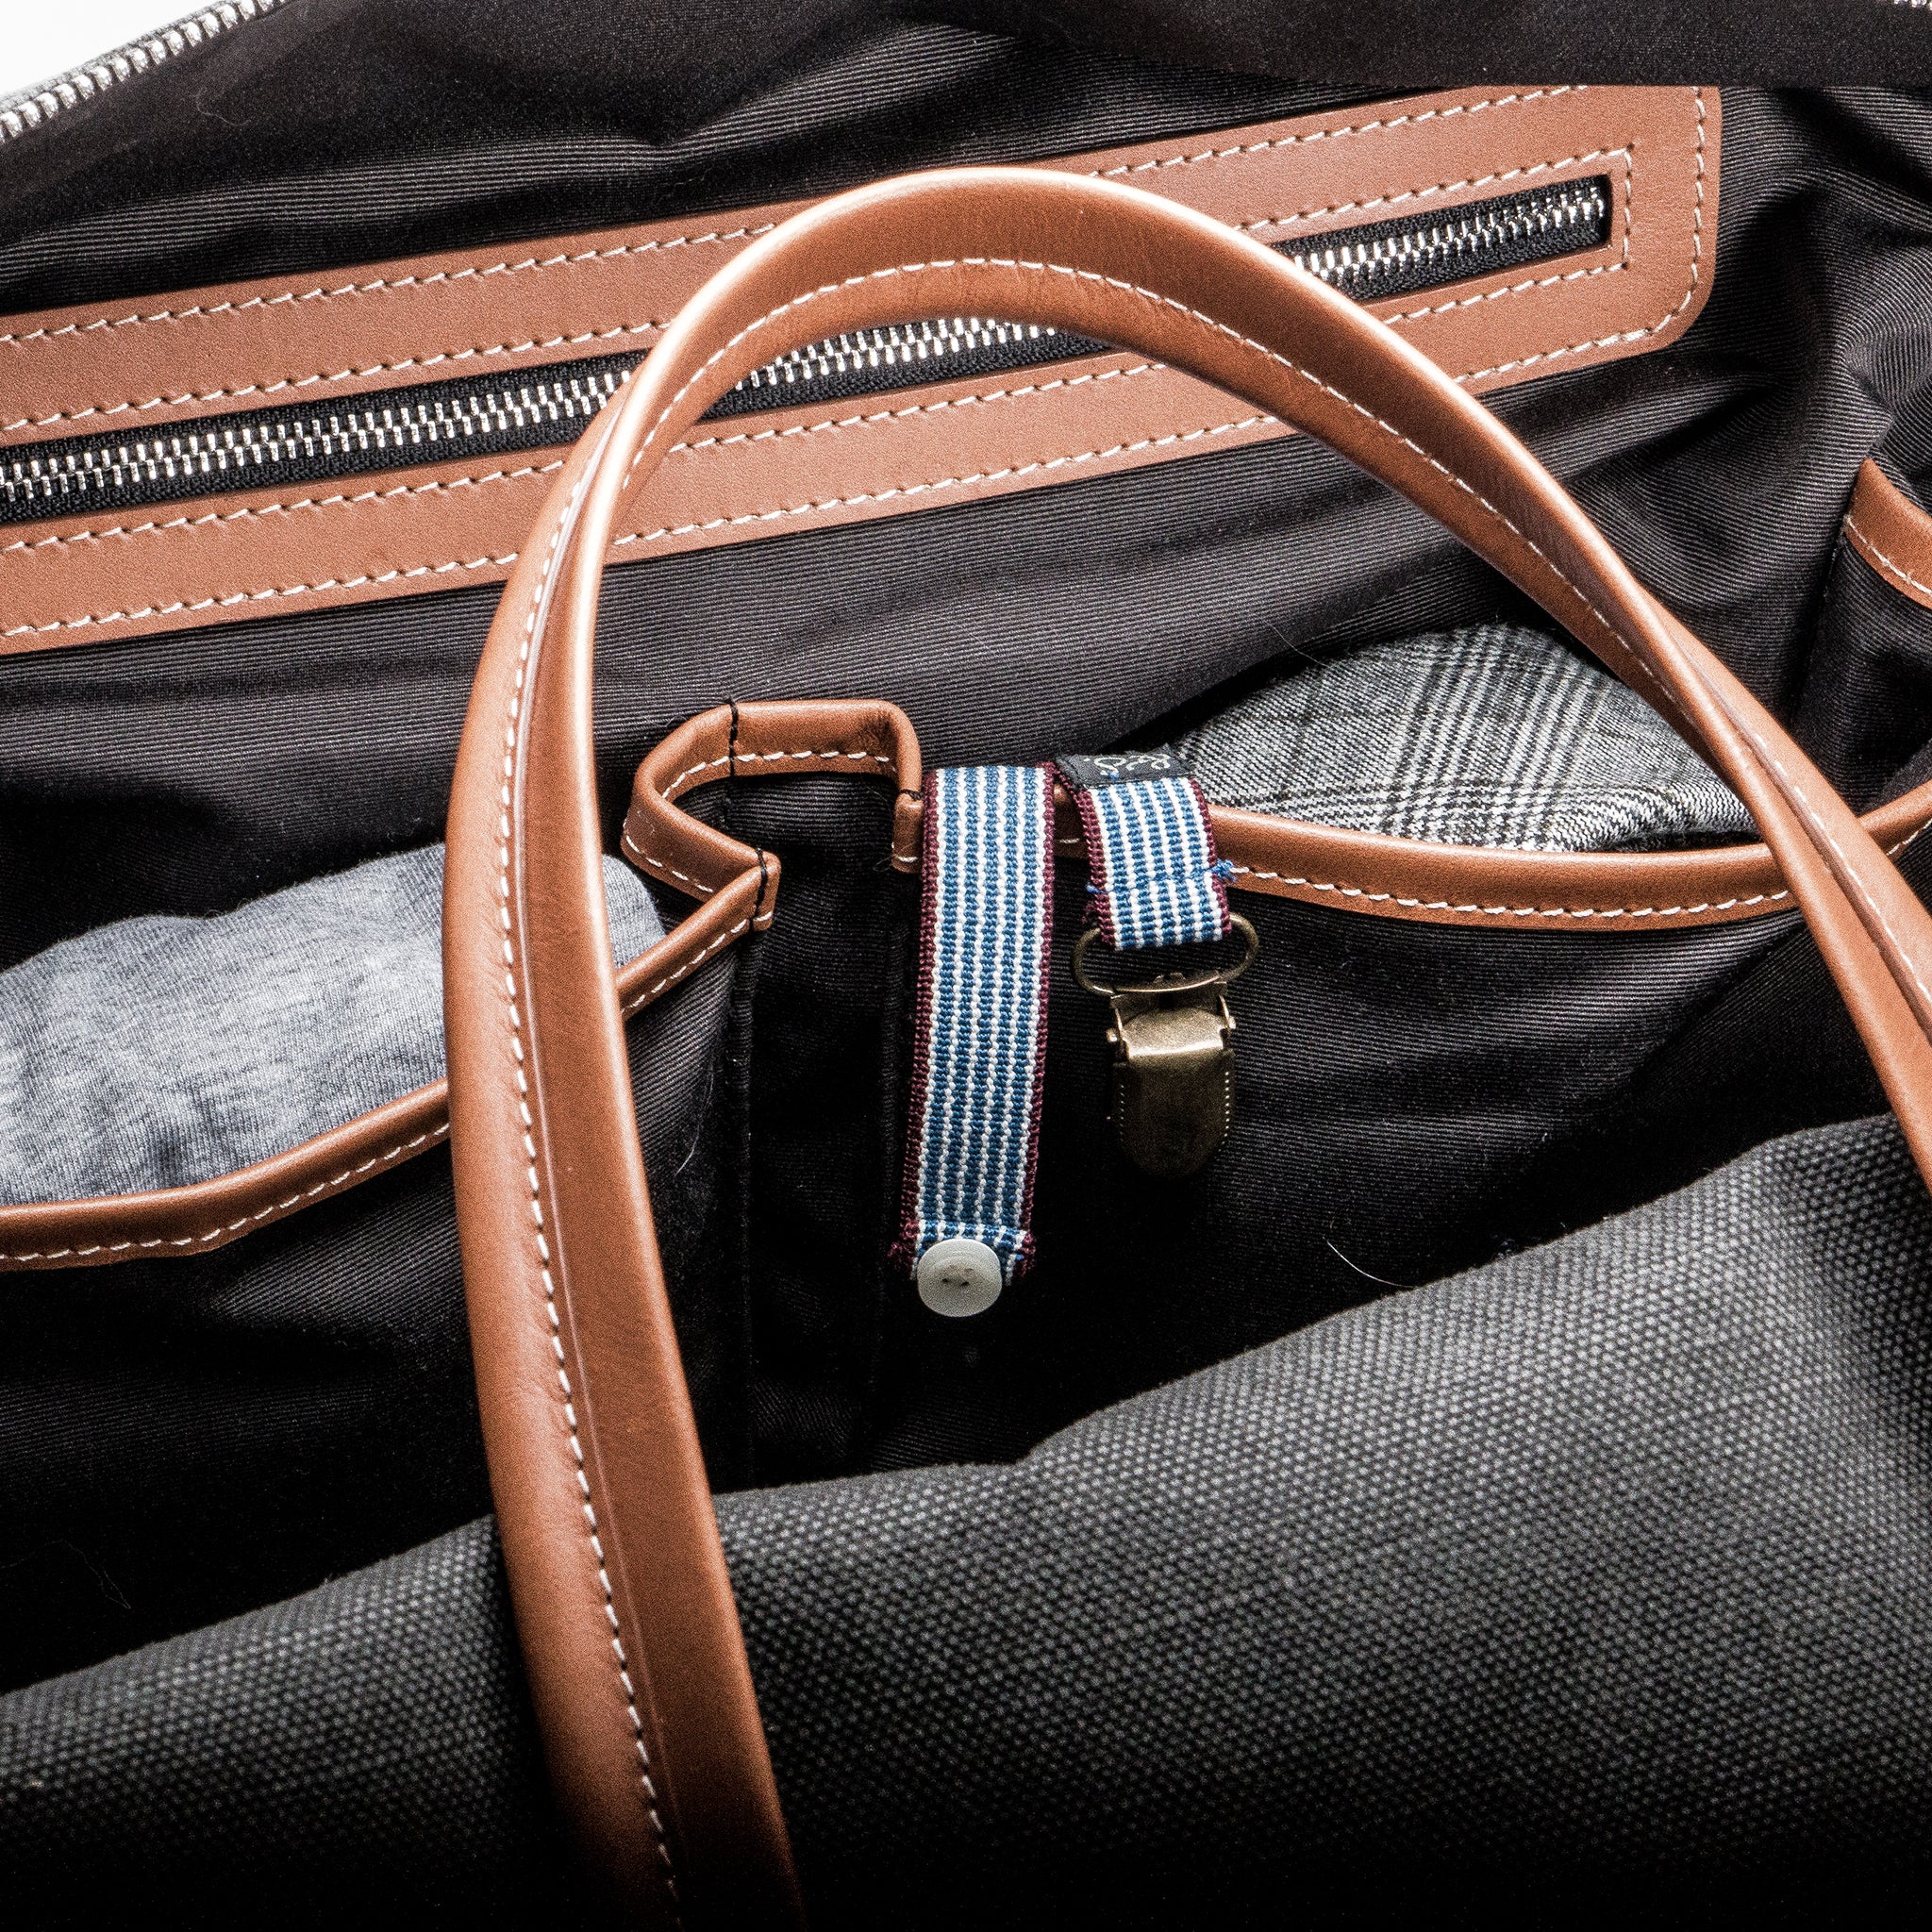 Présentation des poches intérieures du sac de voyage lundi en toile et cuir.